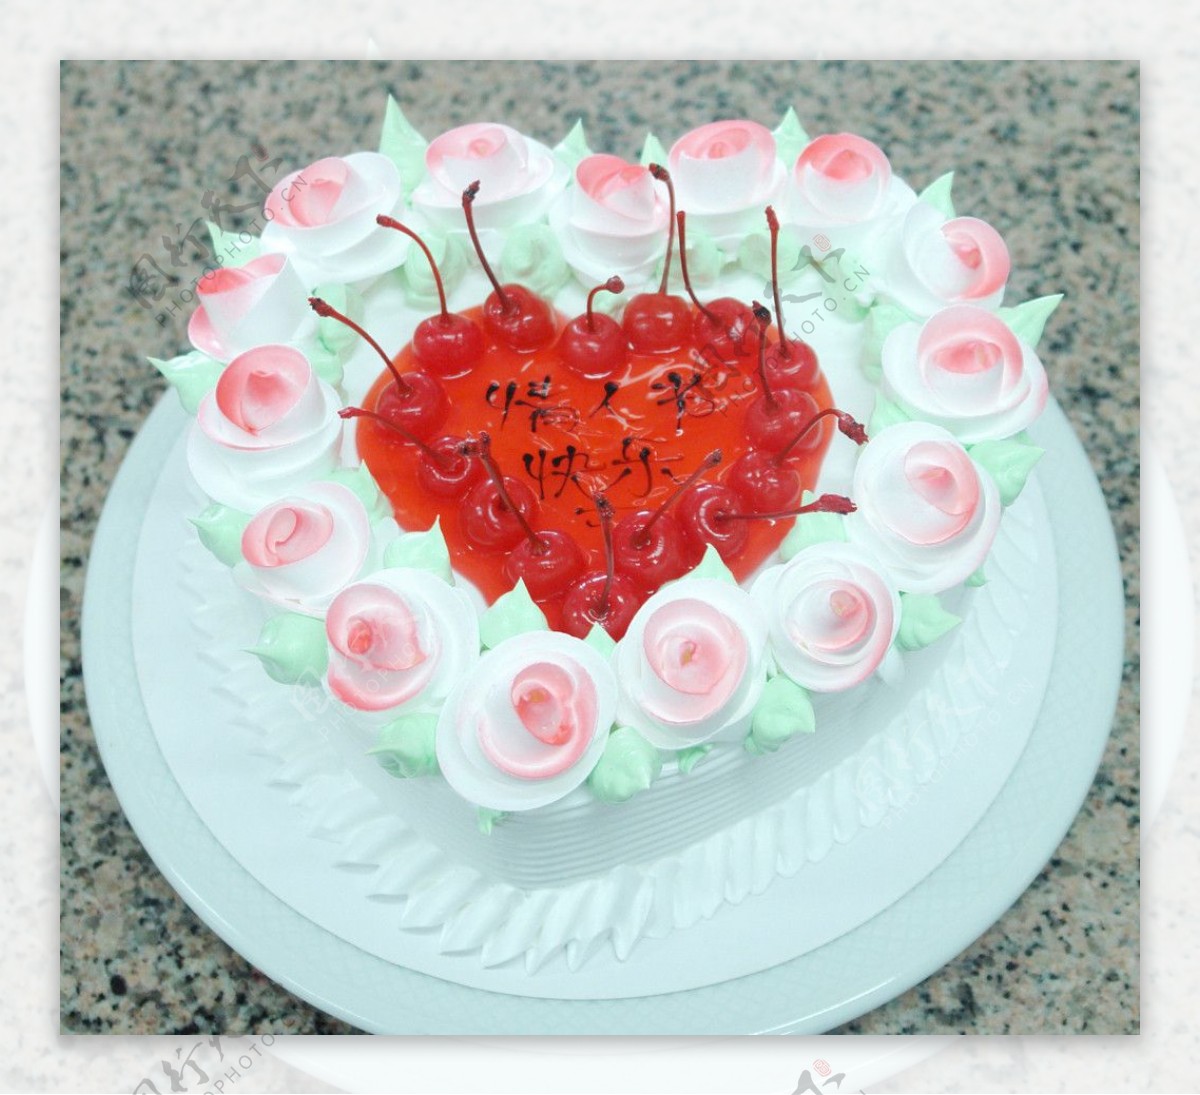 情人节快乐蛋糕图片